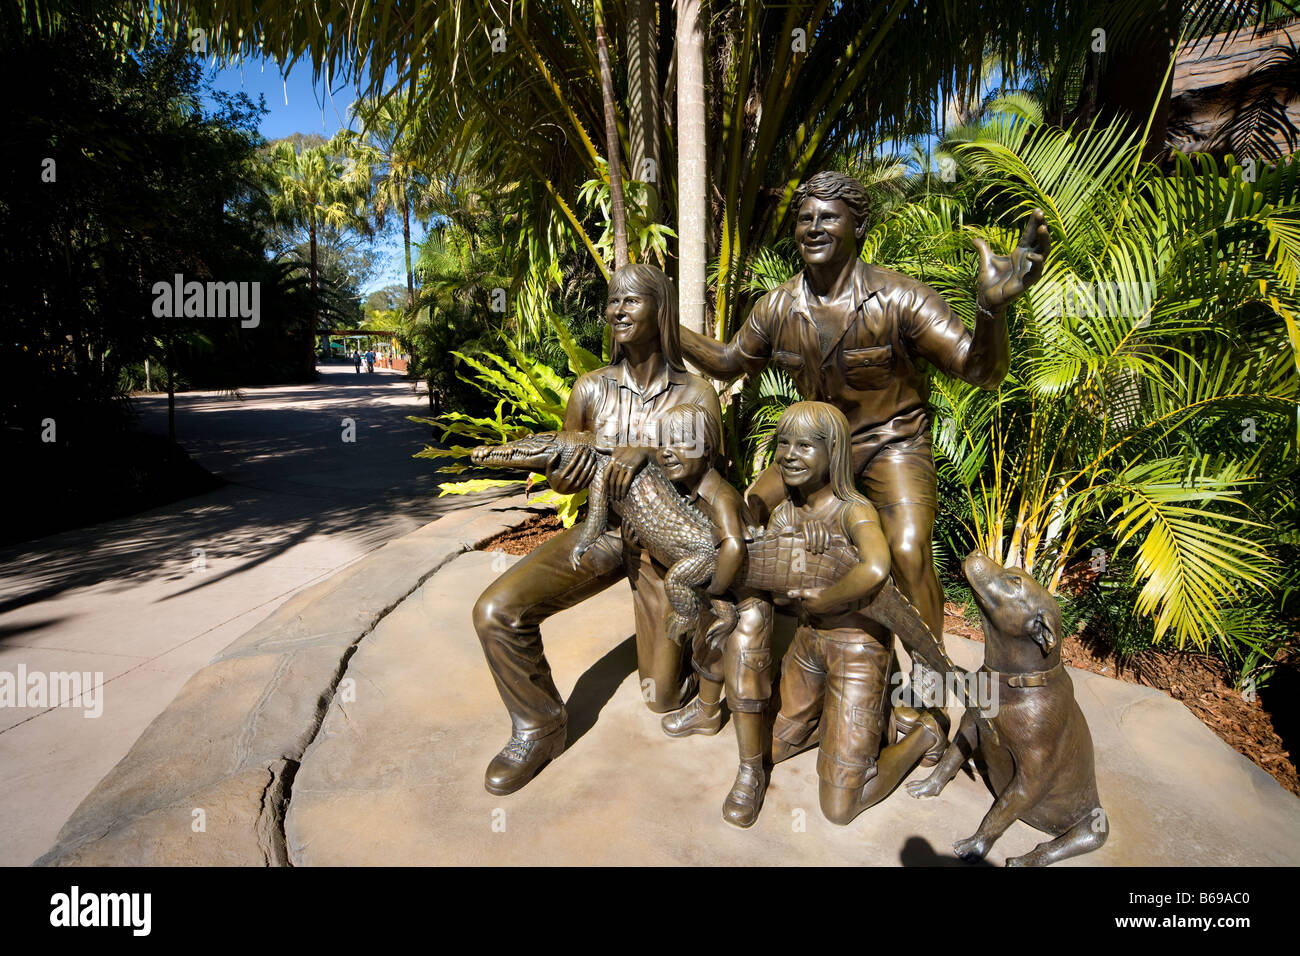 Escultura de bronce de Steve Irwin con su familia en el parque zoológico de Australia. Foto de stock